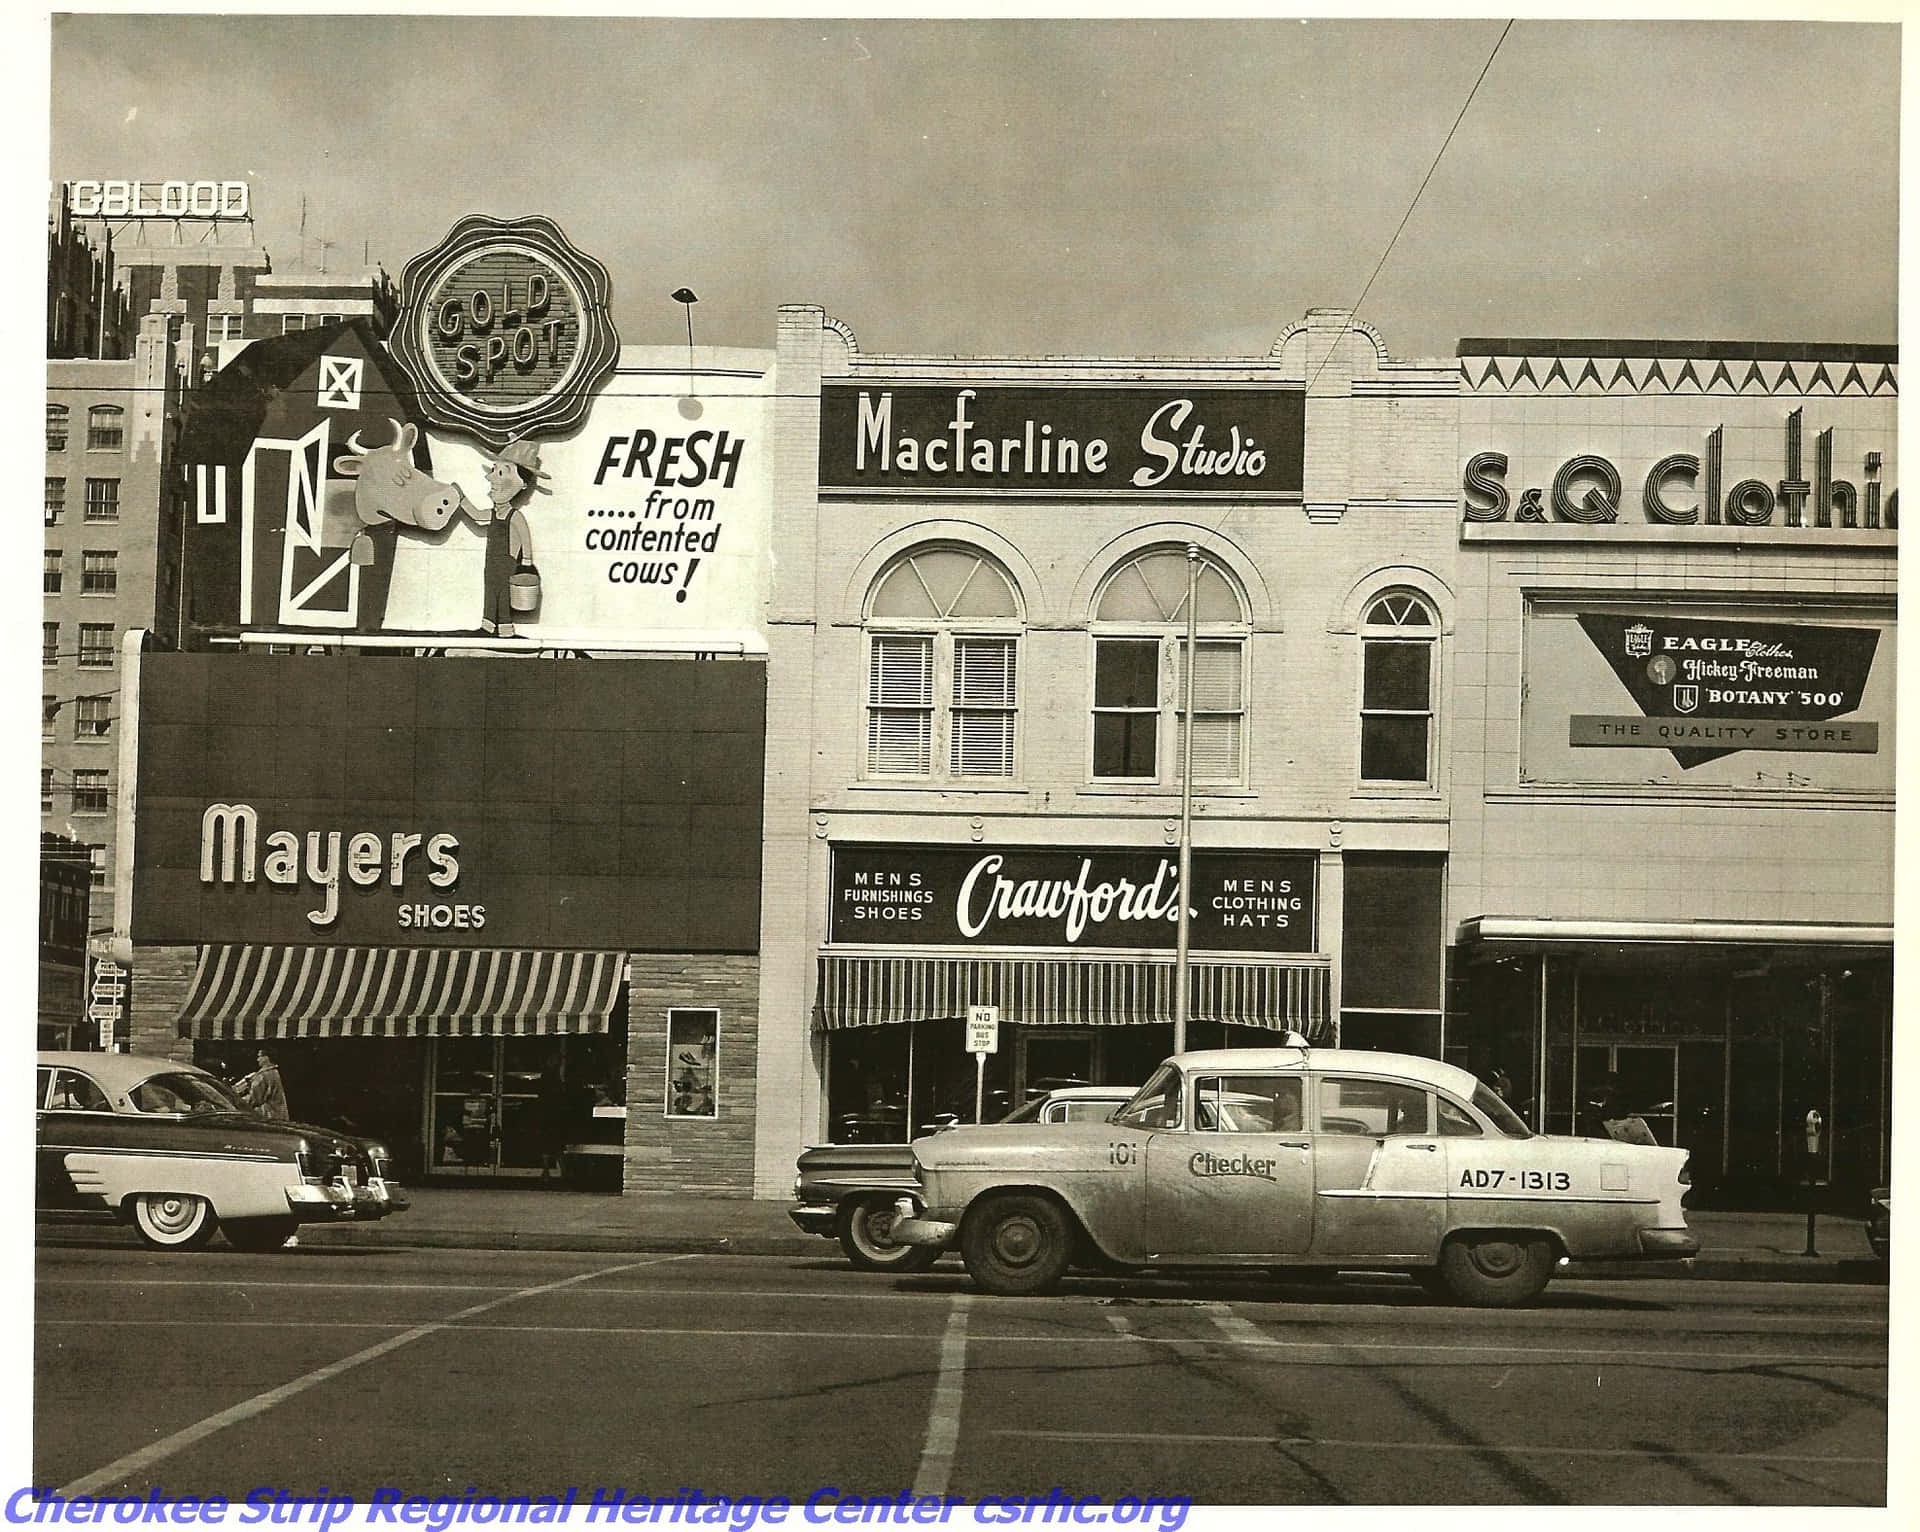 Klassiskbild Från 1950-talet Som Visar Historiska Main Street.